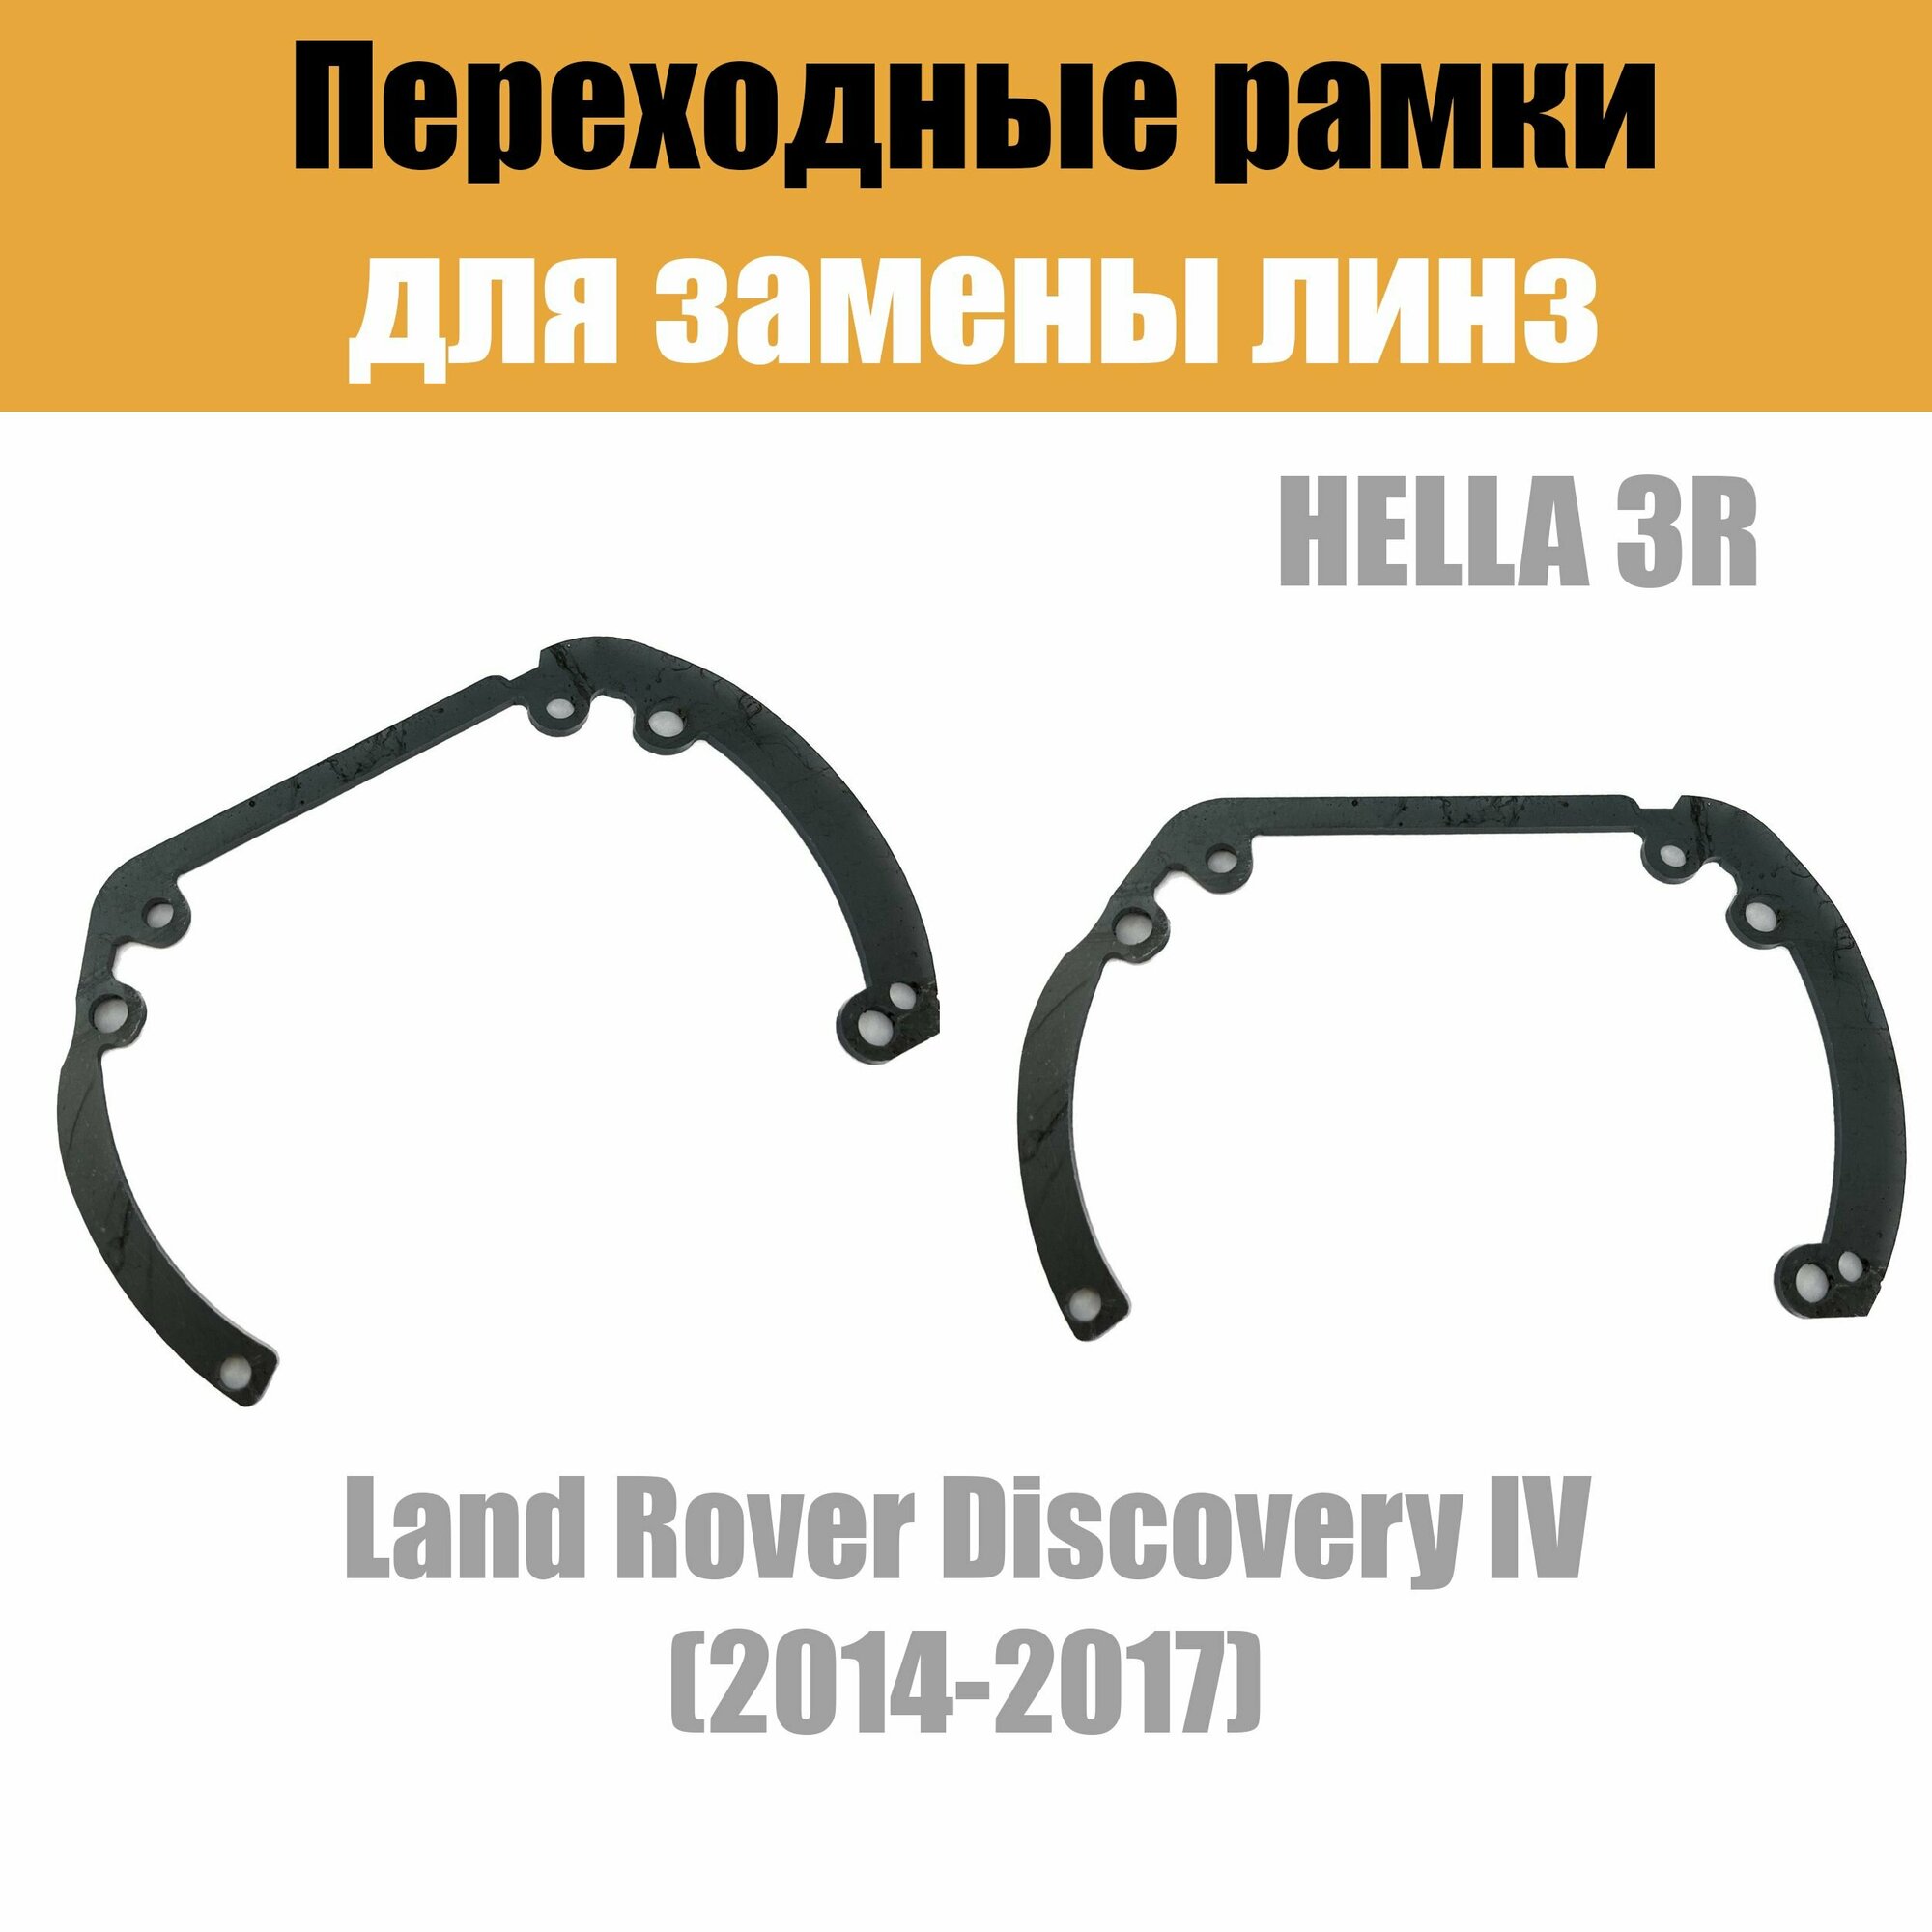 Переходные рамки для линз №6 на Land Rover Discovery IV (2014-2017) под модуль Hella 3R/Hella 3 (Комплект 2шт)